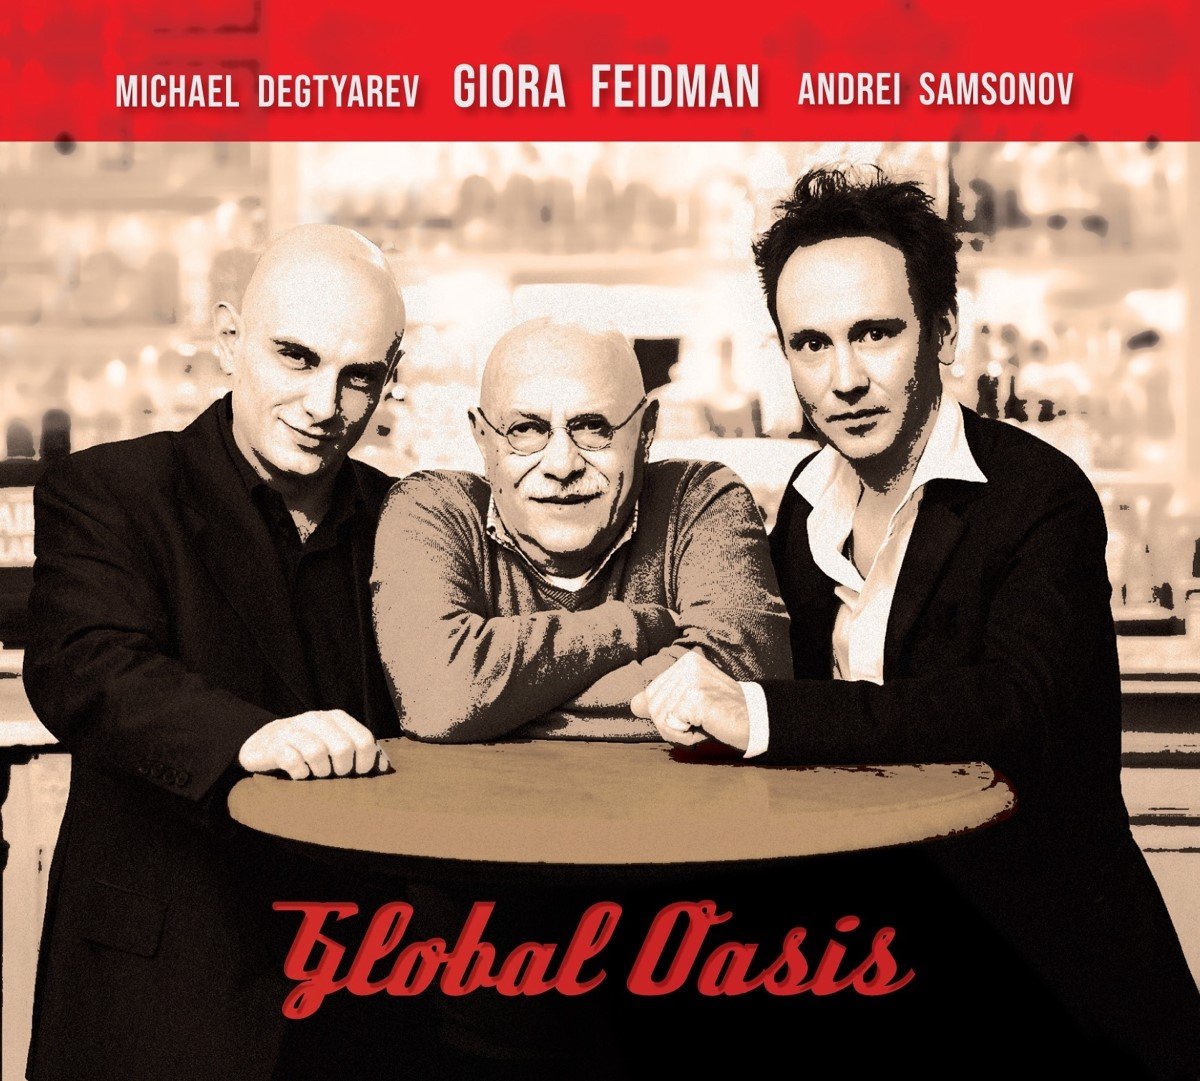 Giora Feidman, Andrei Samsonov, Michael Degtyarev - Global Oasis (CD) - Giora Feidman, Andrei Samsonov, Michael Degtyarev